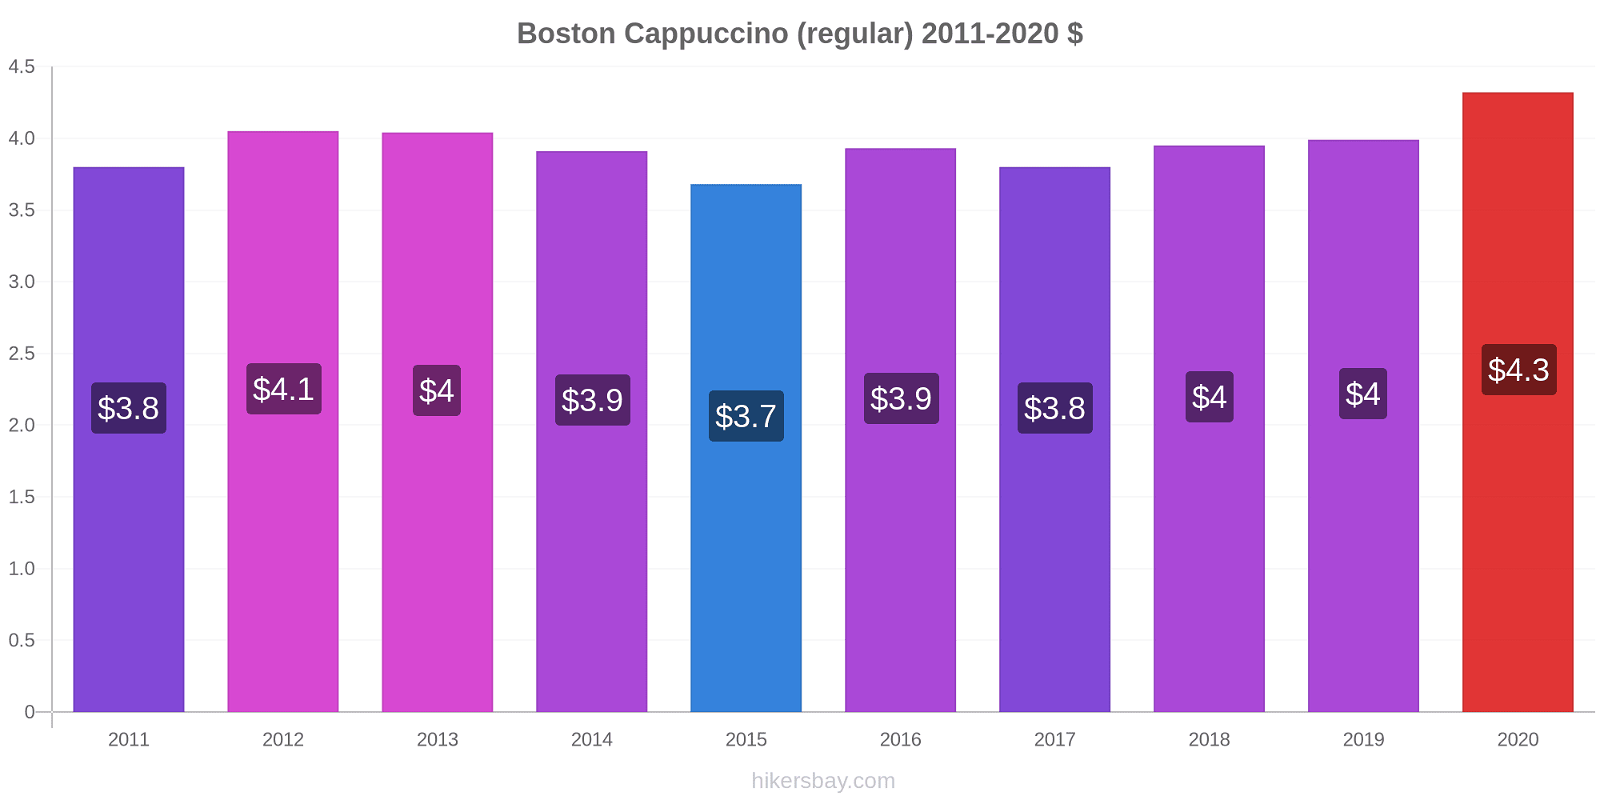 Boston price changes Cappuccino (regular) hikersbay.com